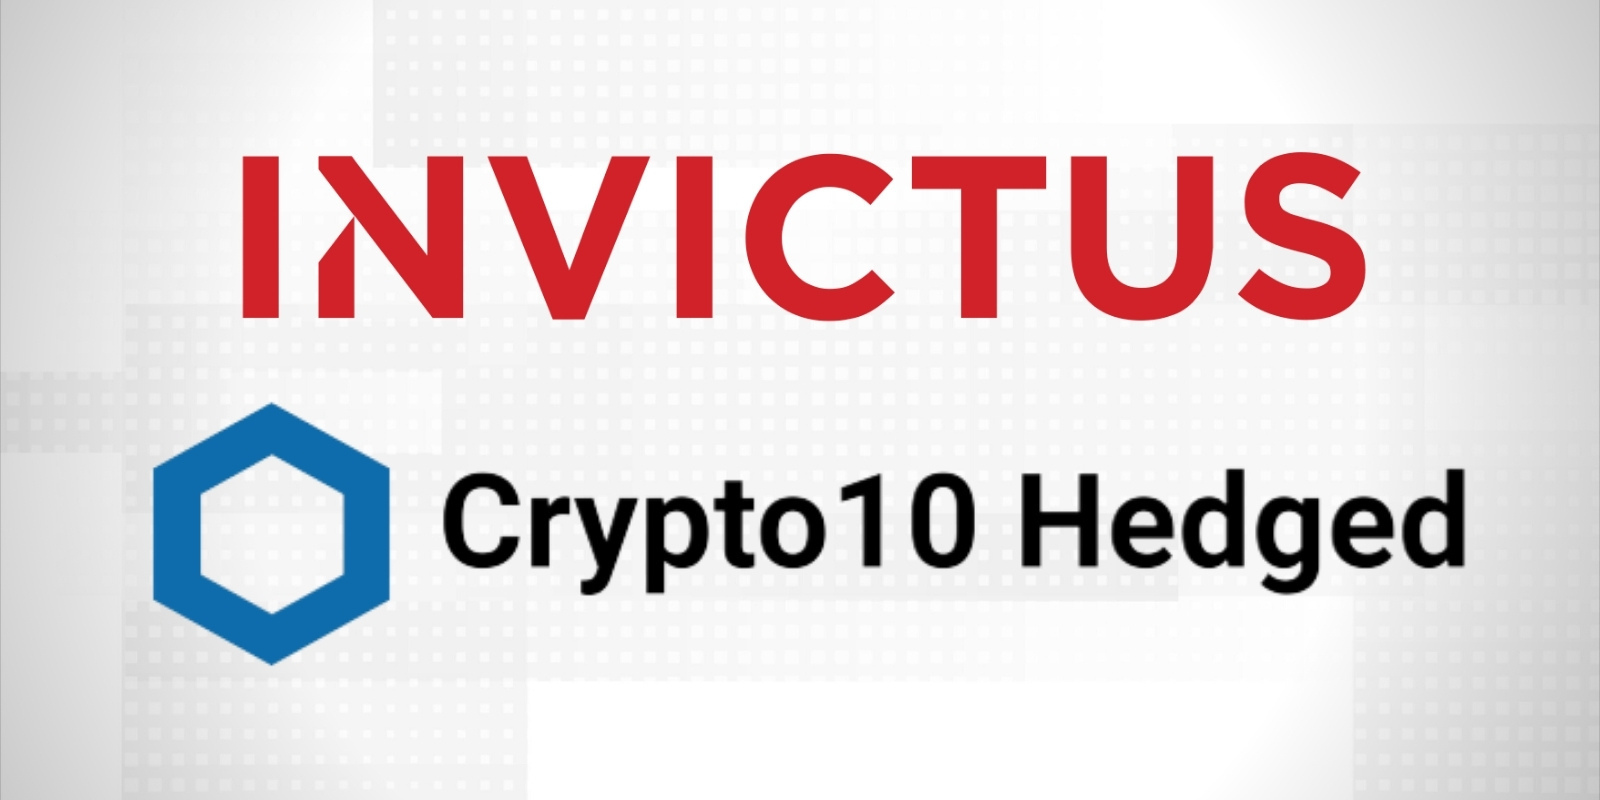 Ne craignez plus la volatilité du marché grâce à Invictus Capital et son indice Crypto10